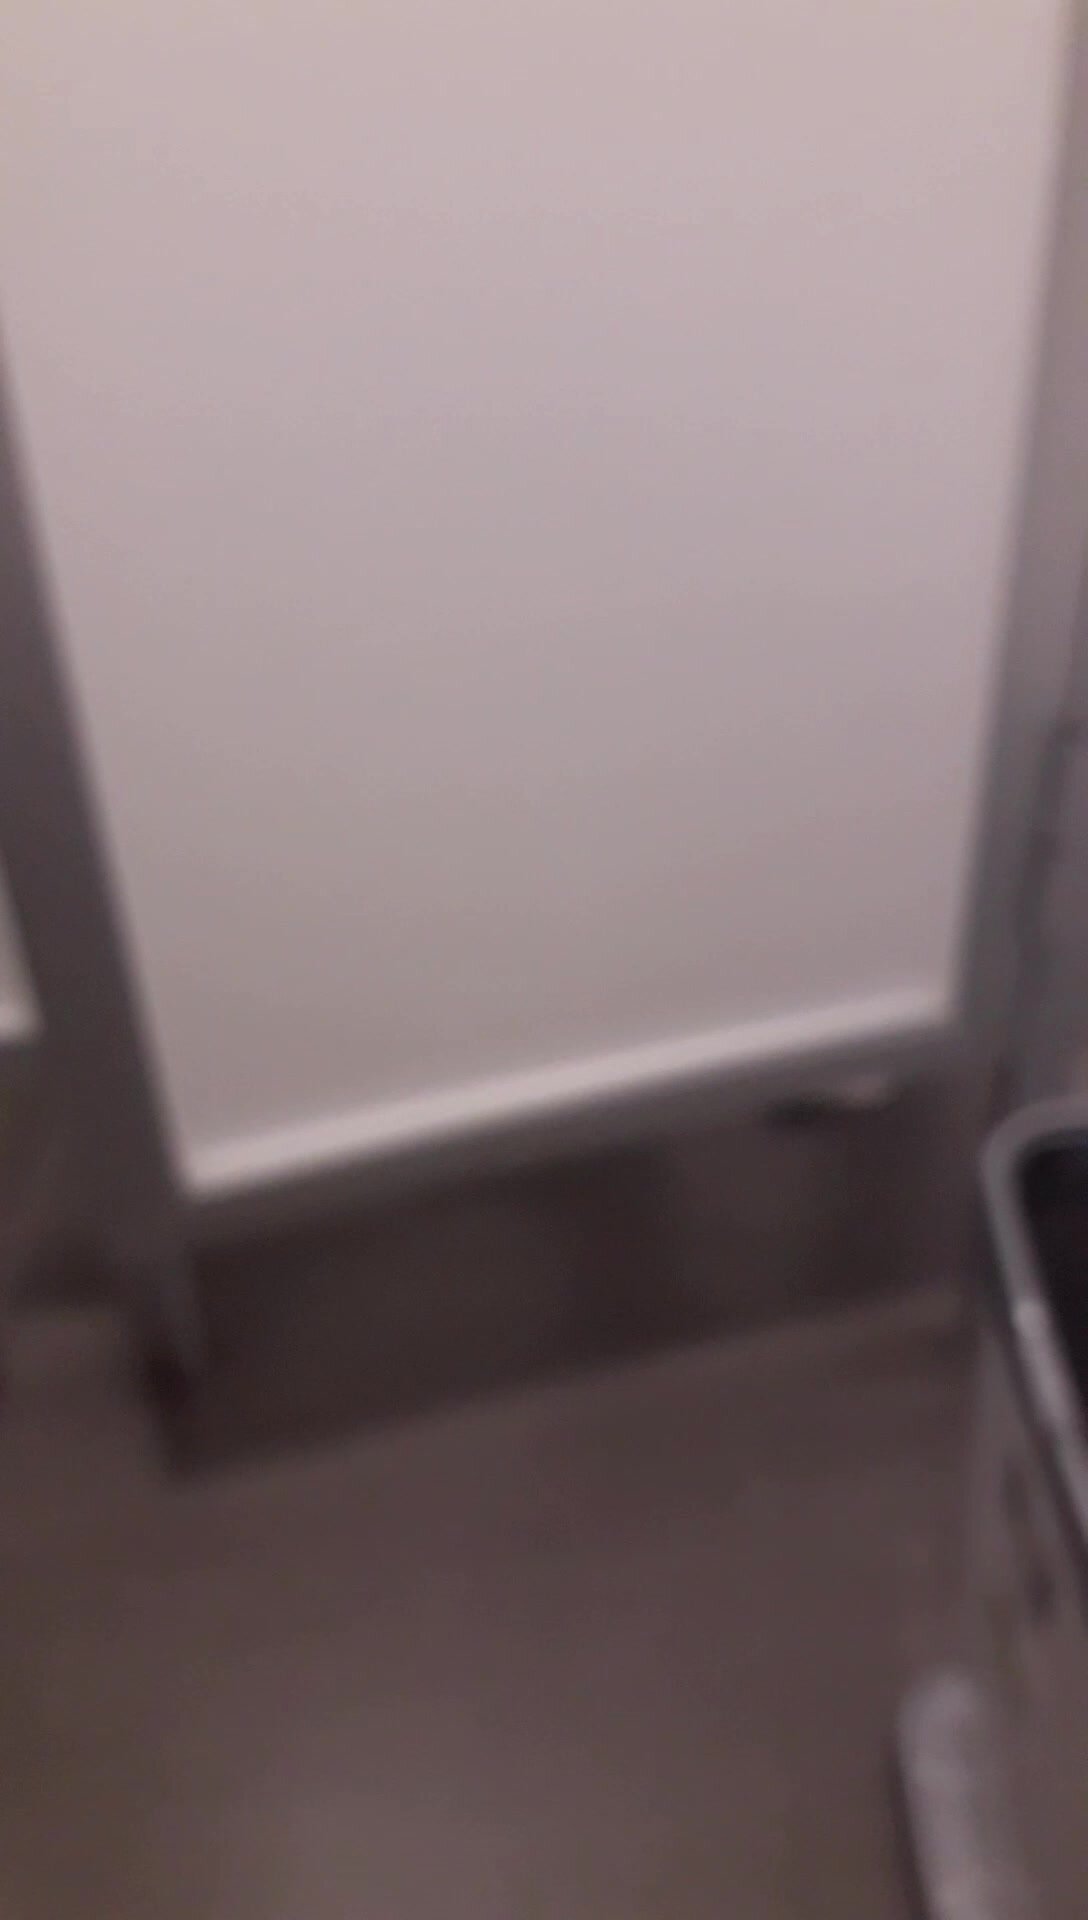 Strangers Opened The Public Toilet Door - video 5